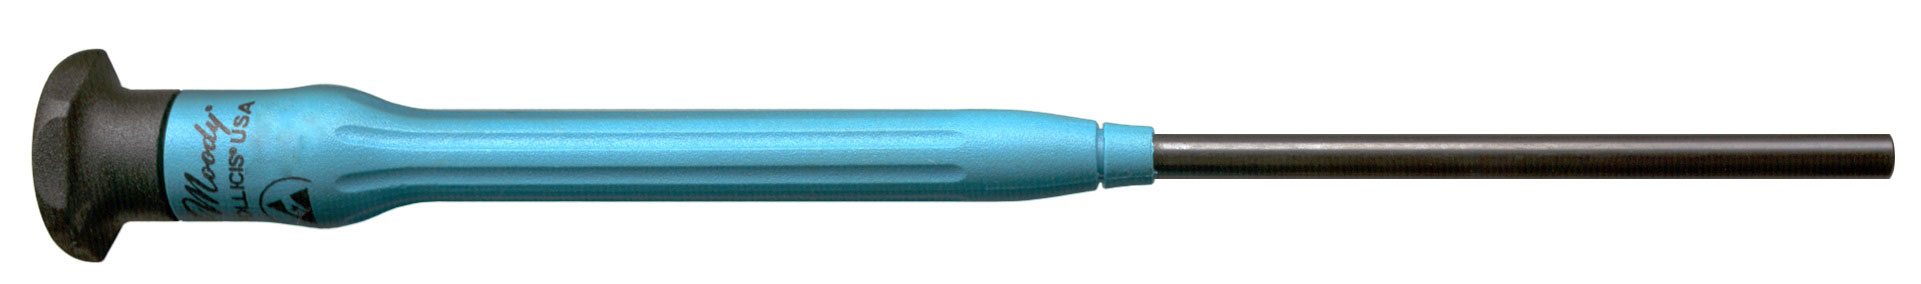 미터법 너트 드라이버, 고정, Esd-안전, 긴, 2.5mm